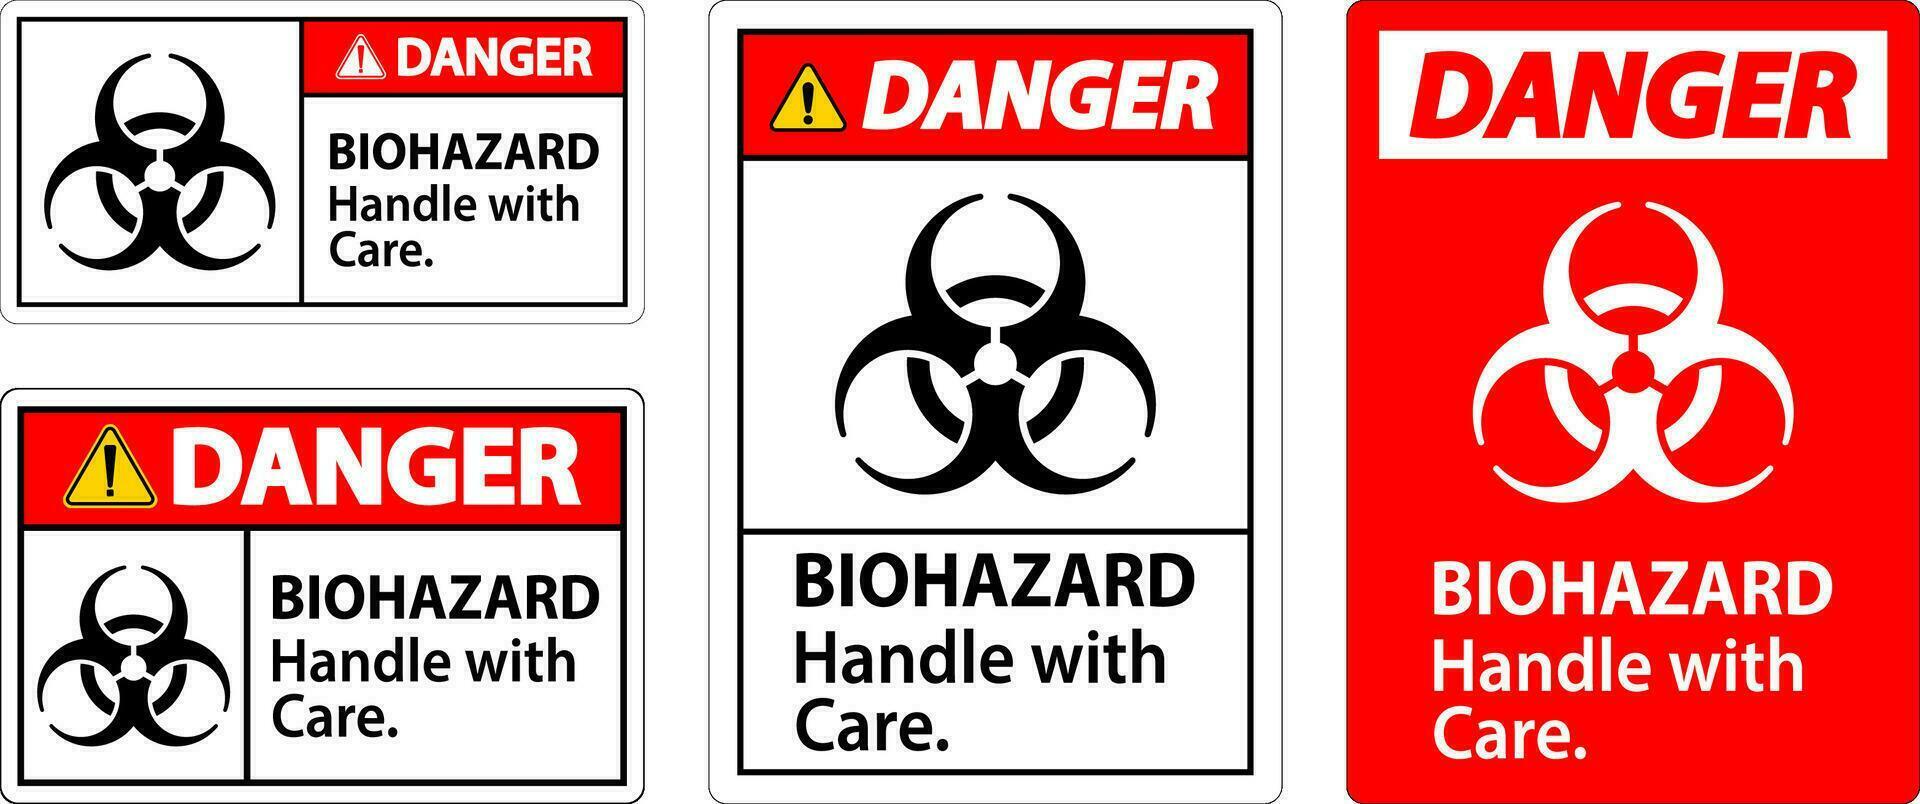 biohazard fara märka biologisk fara, hantera med vård vektor